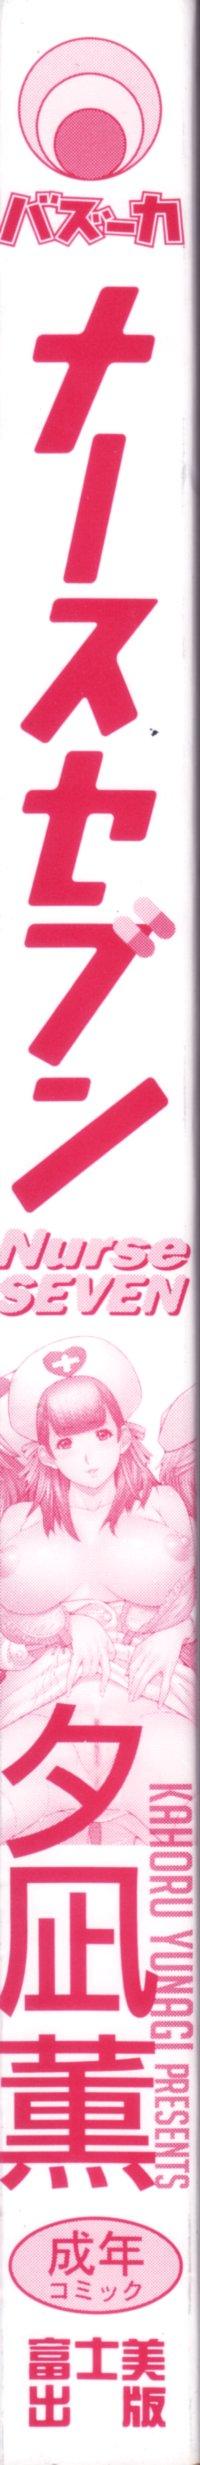 Nurse Seven 5